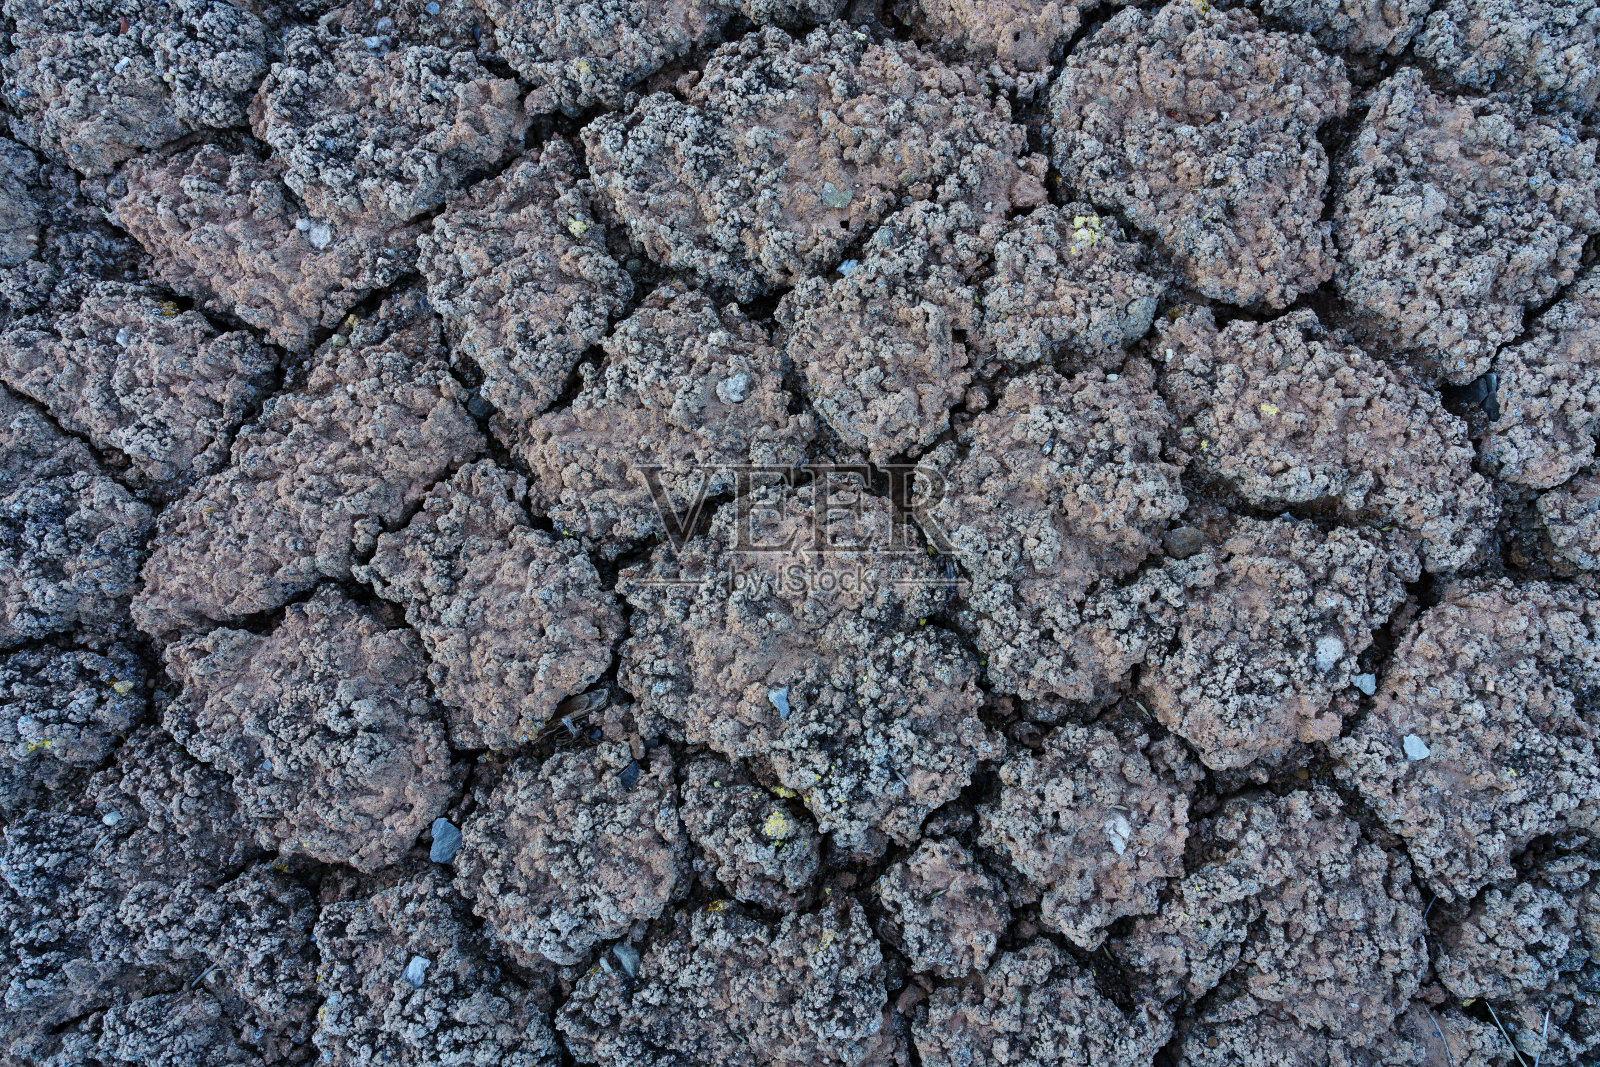 Cryptobiotic土壤照片摄影图片